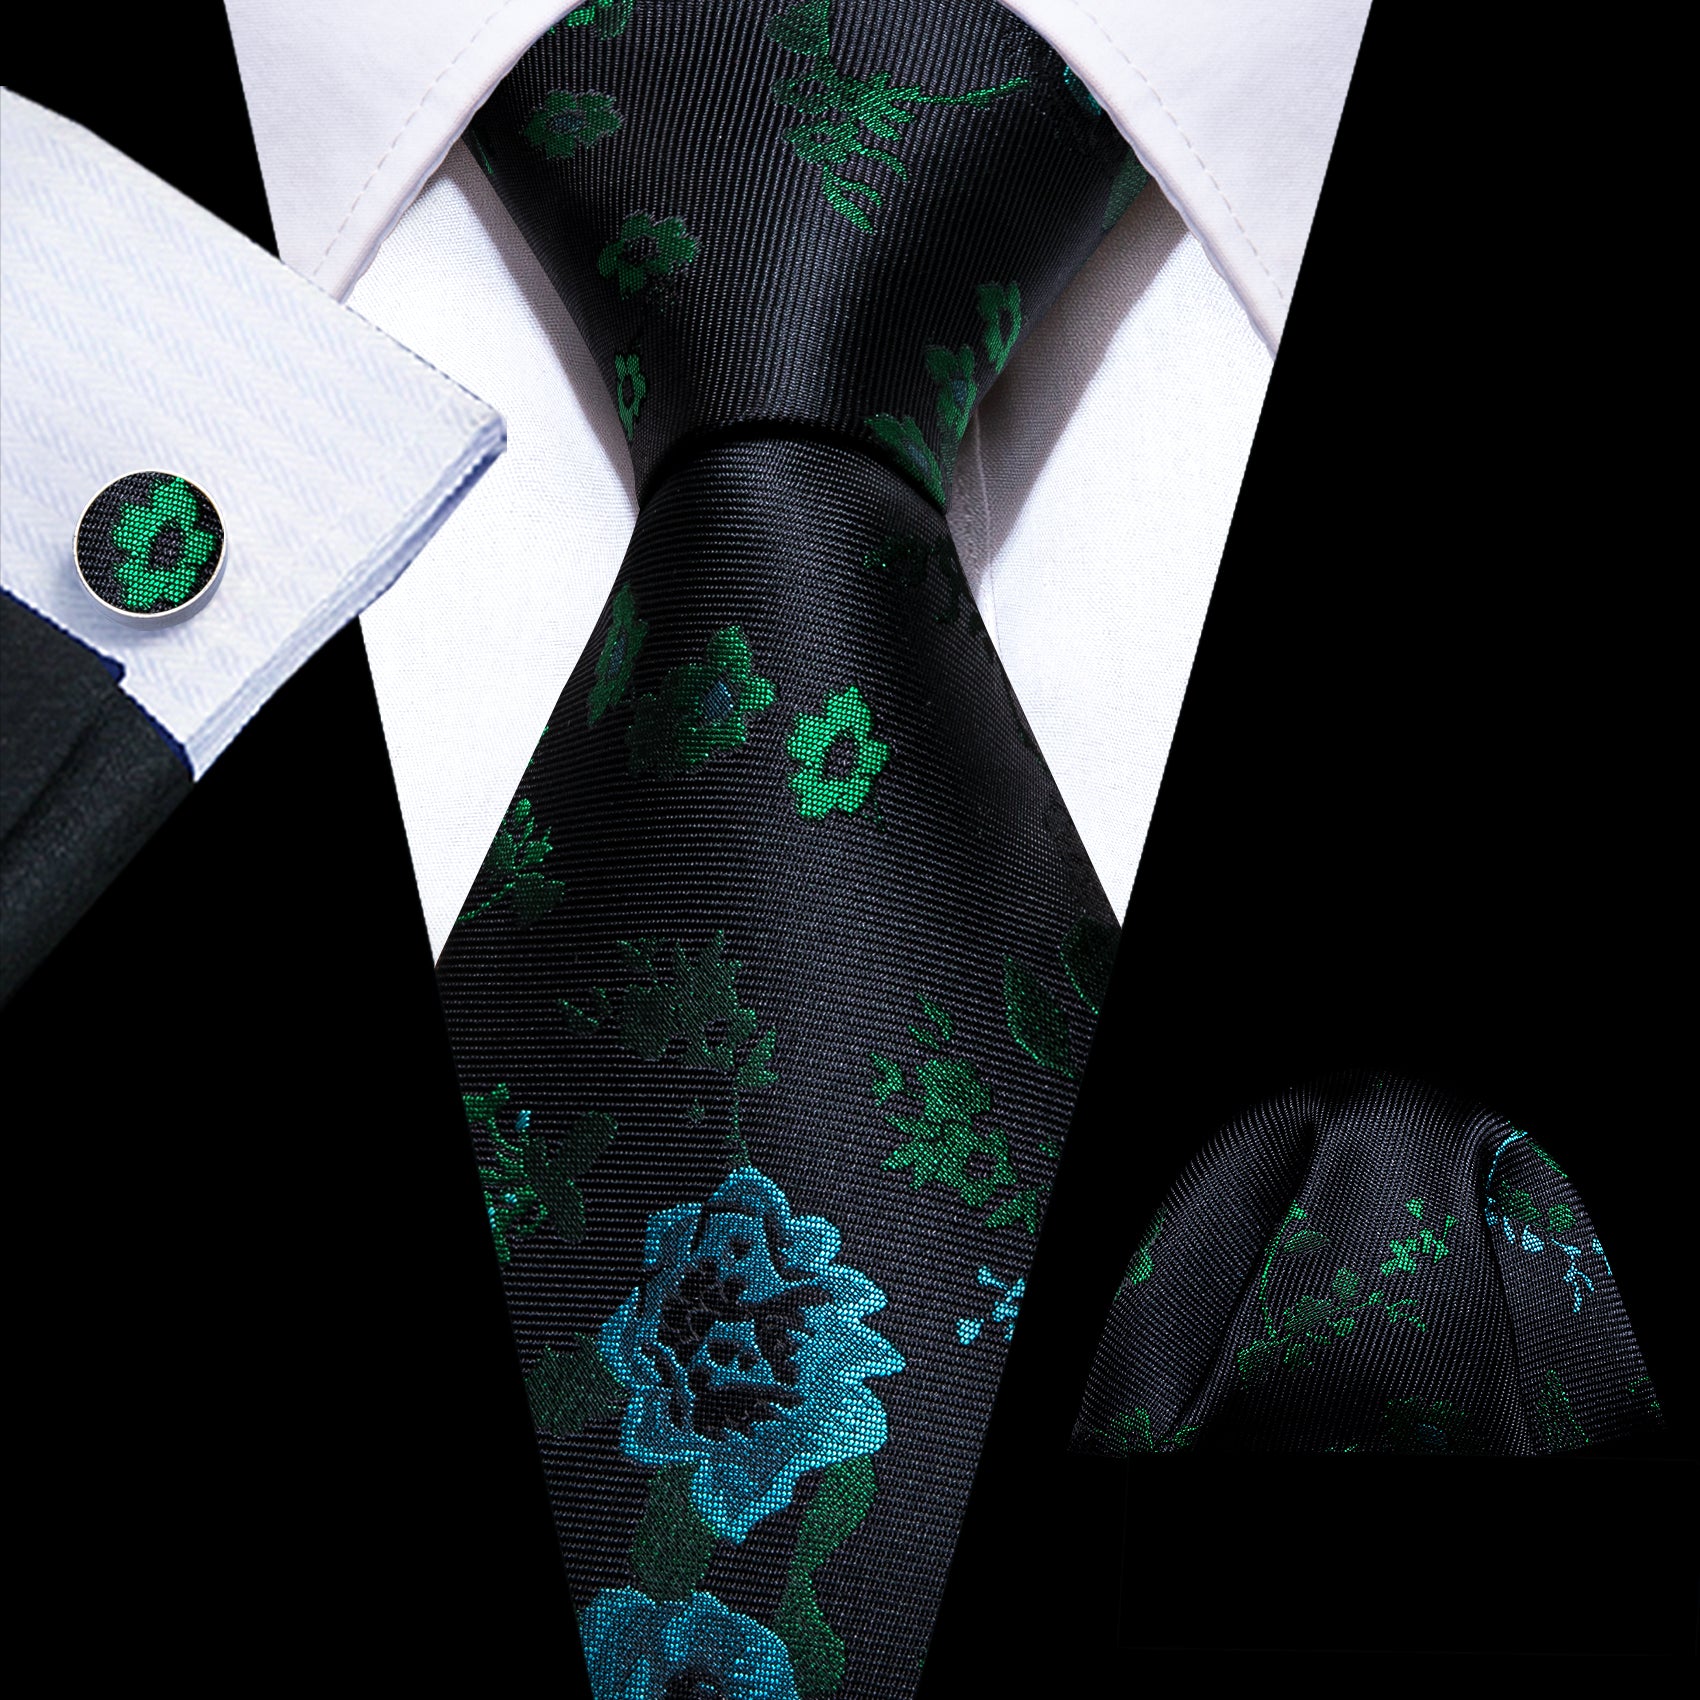 Barry Wang Black Green Roses Flower Tie Handkerchief Cufflinks Set